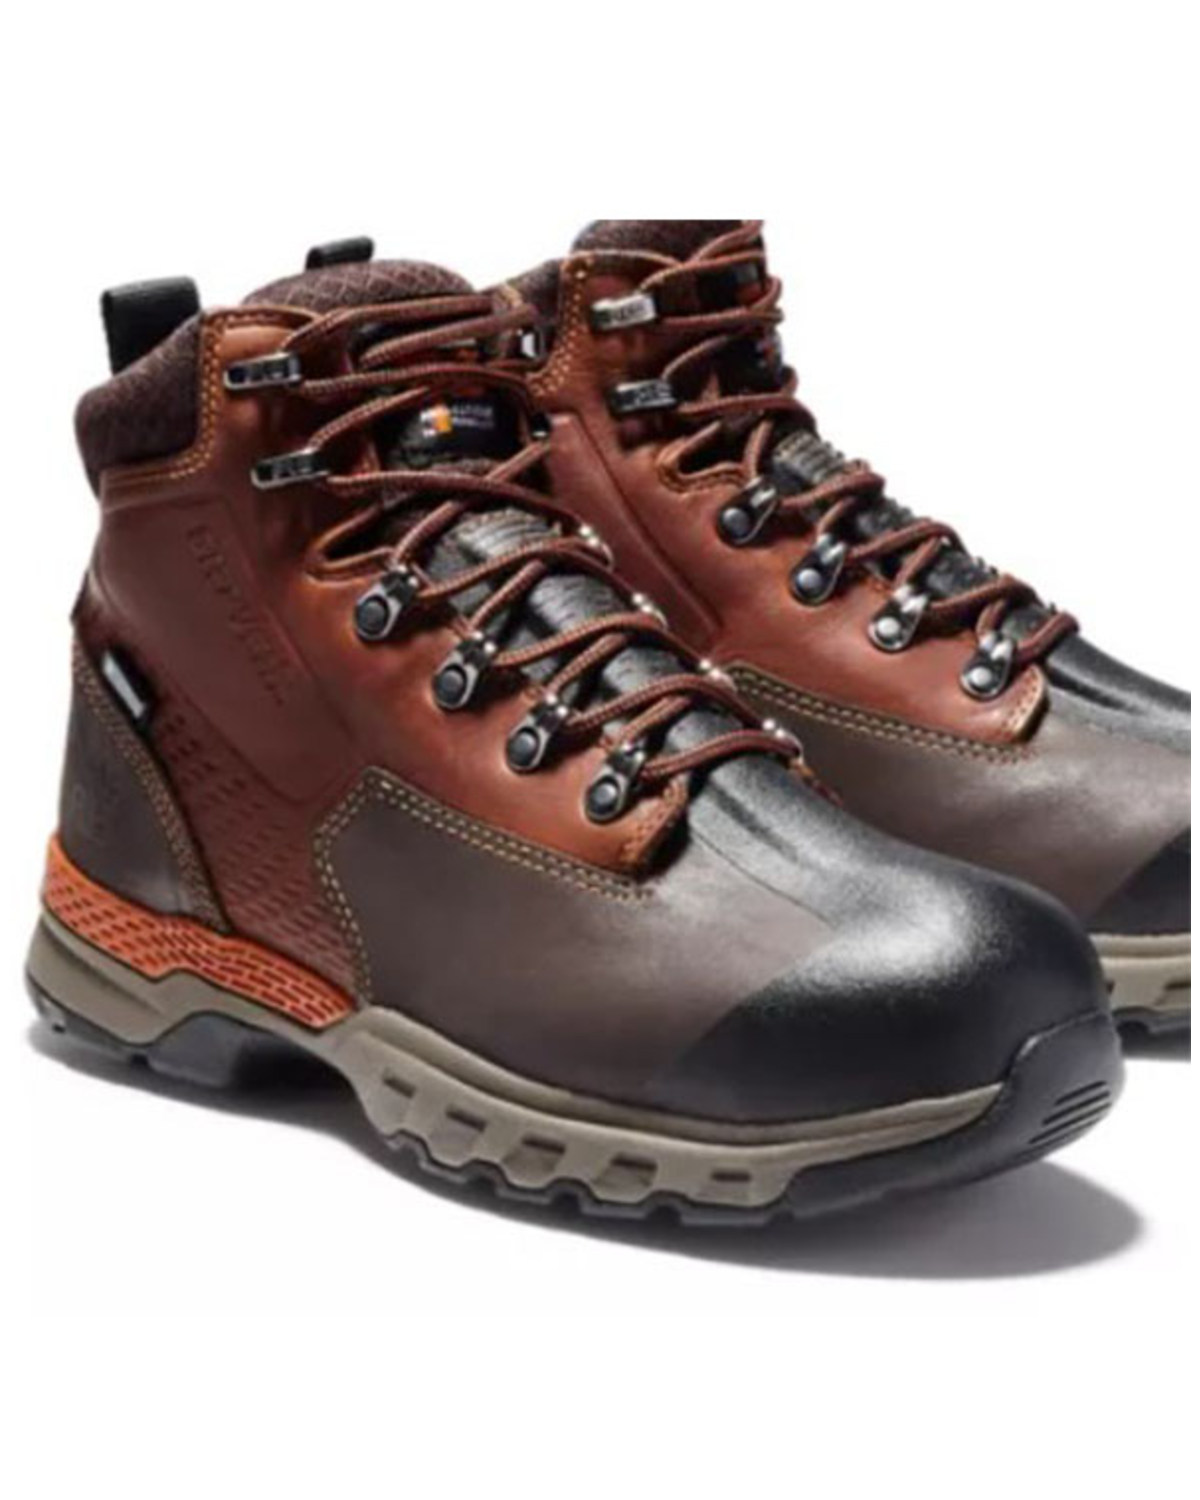 Timberland Pro Men's Downdraft Waterproof Work Boots - Steel Toe